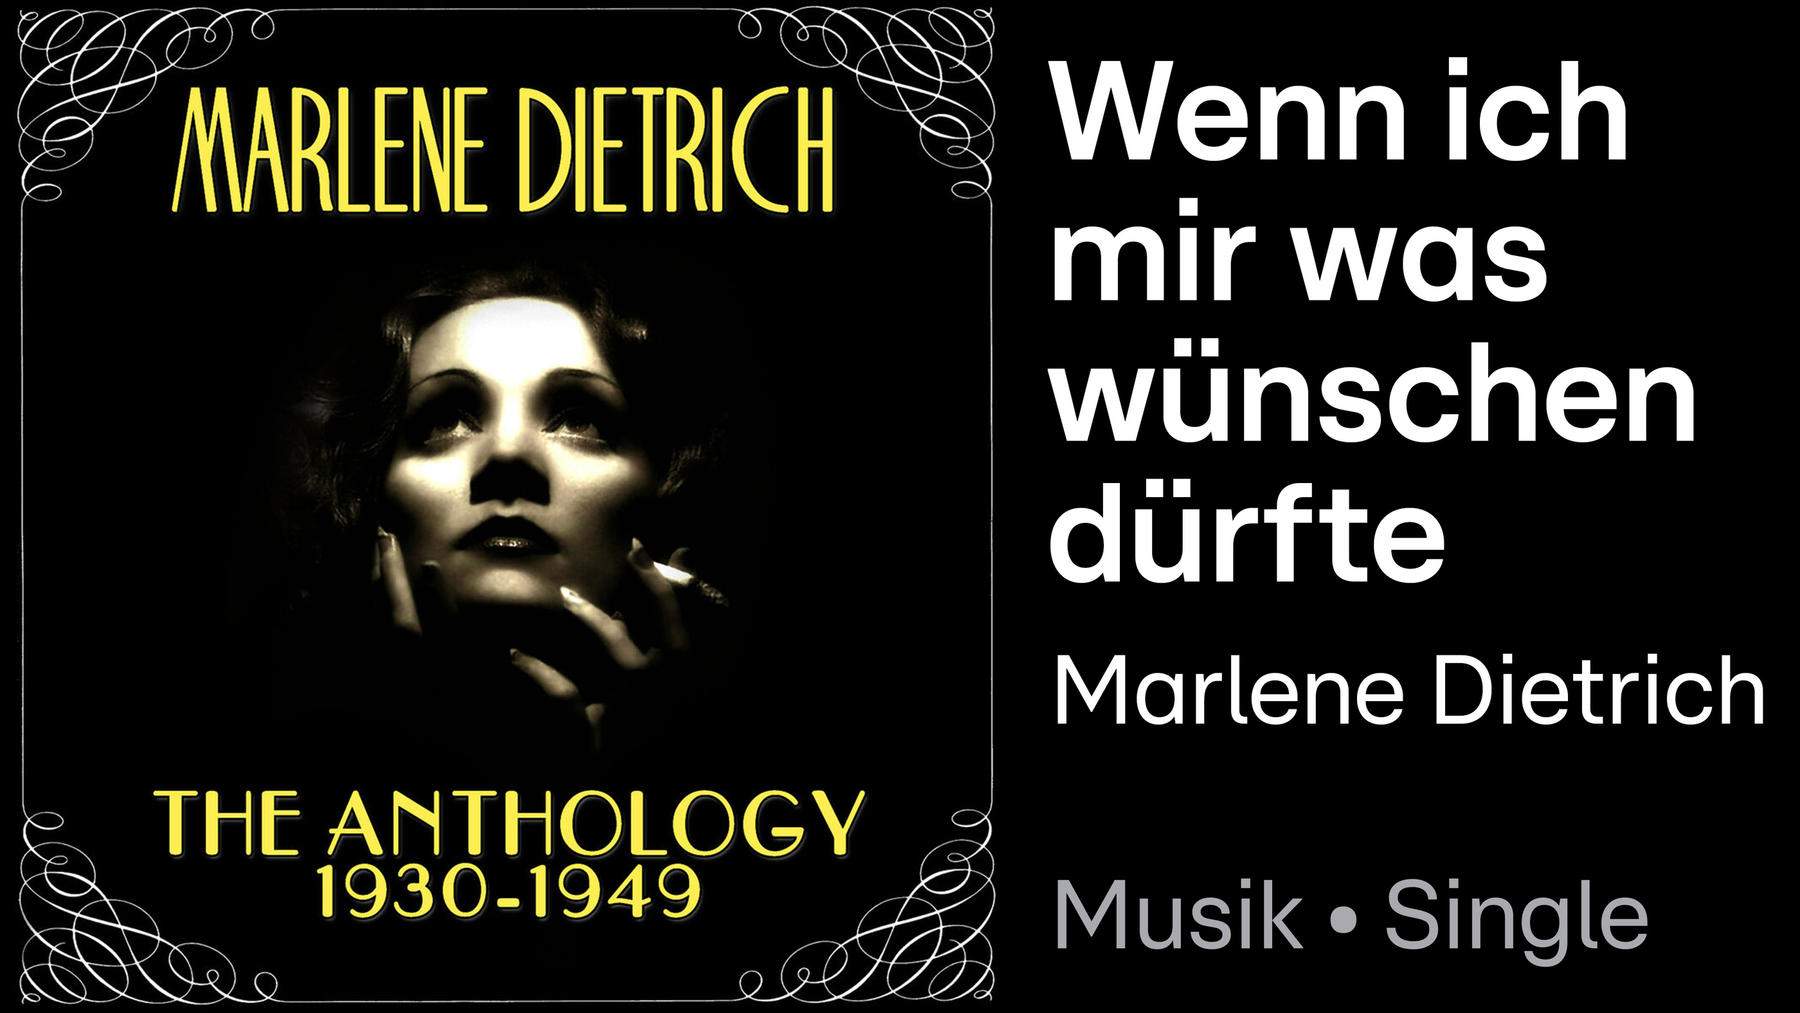 Song vom Marlene Dietrich